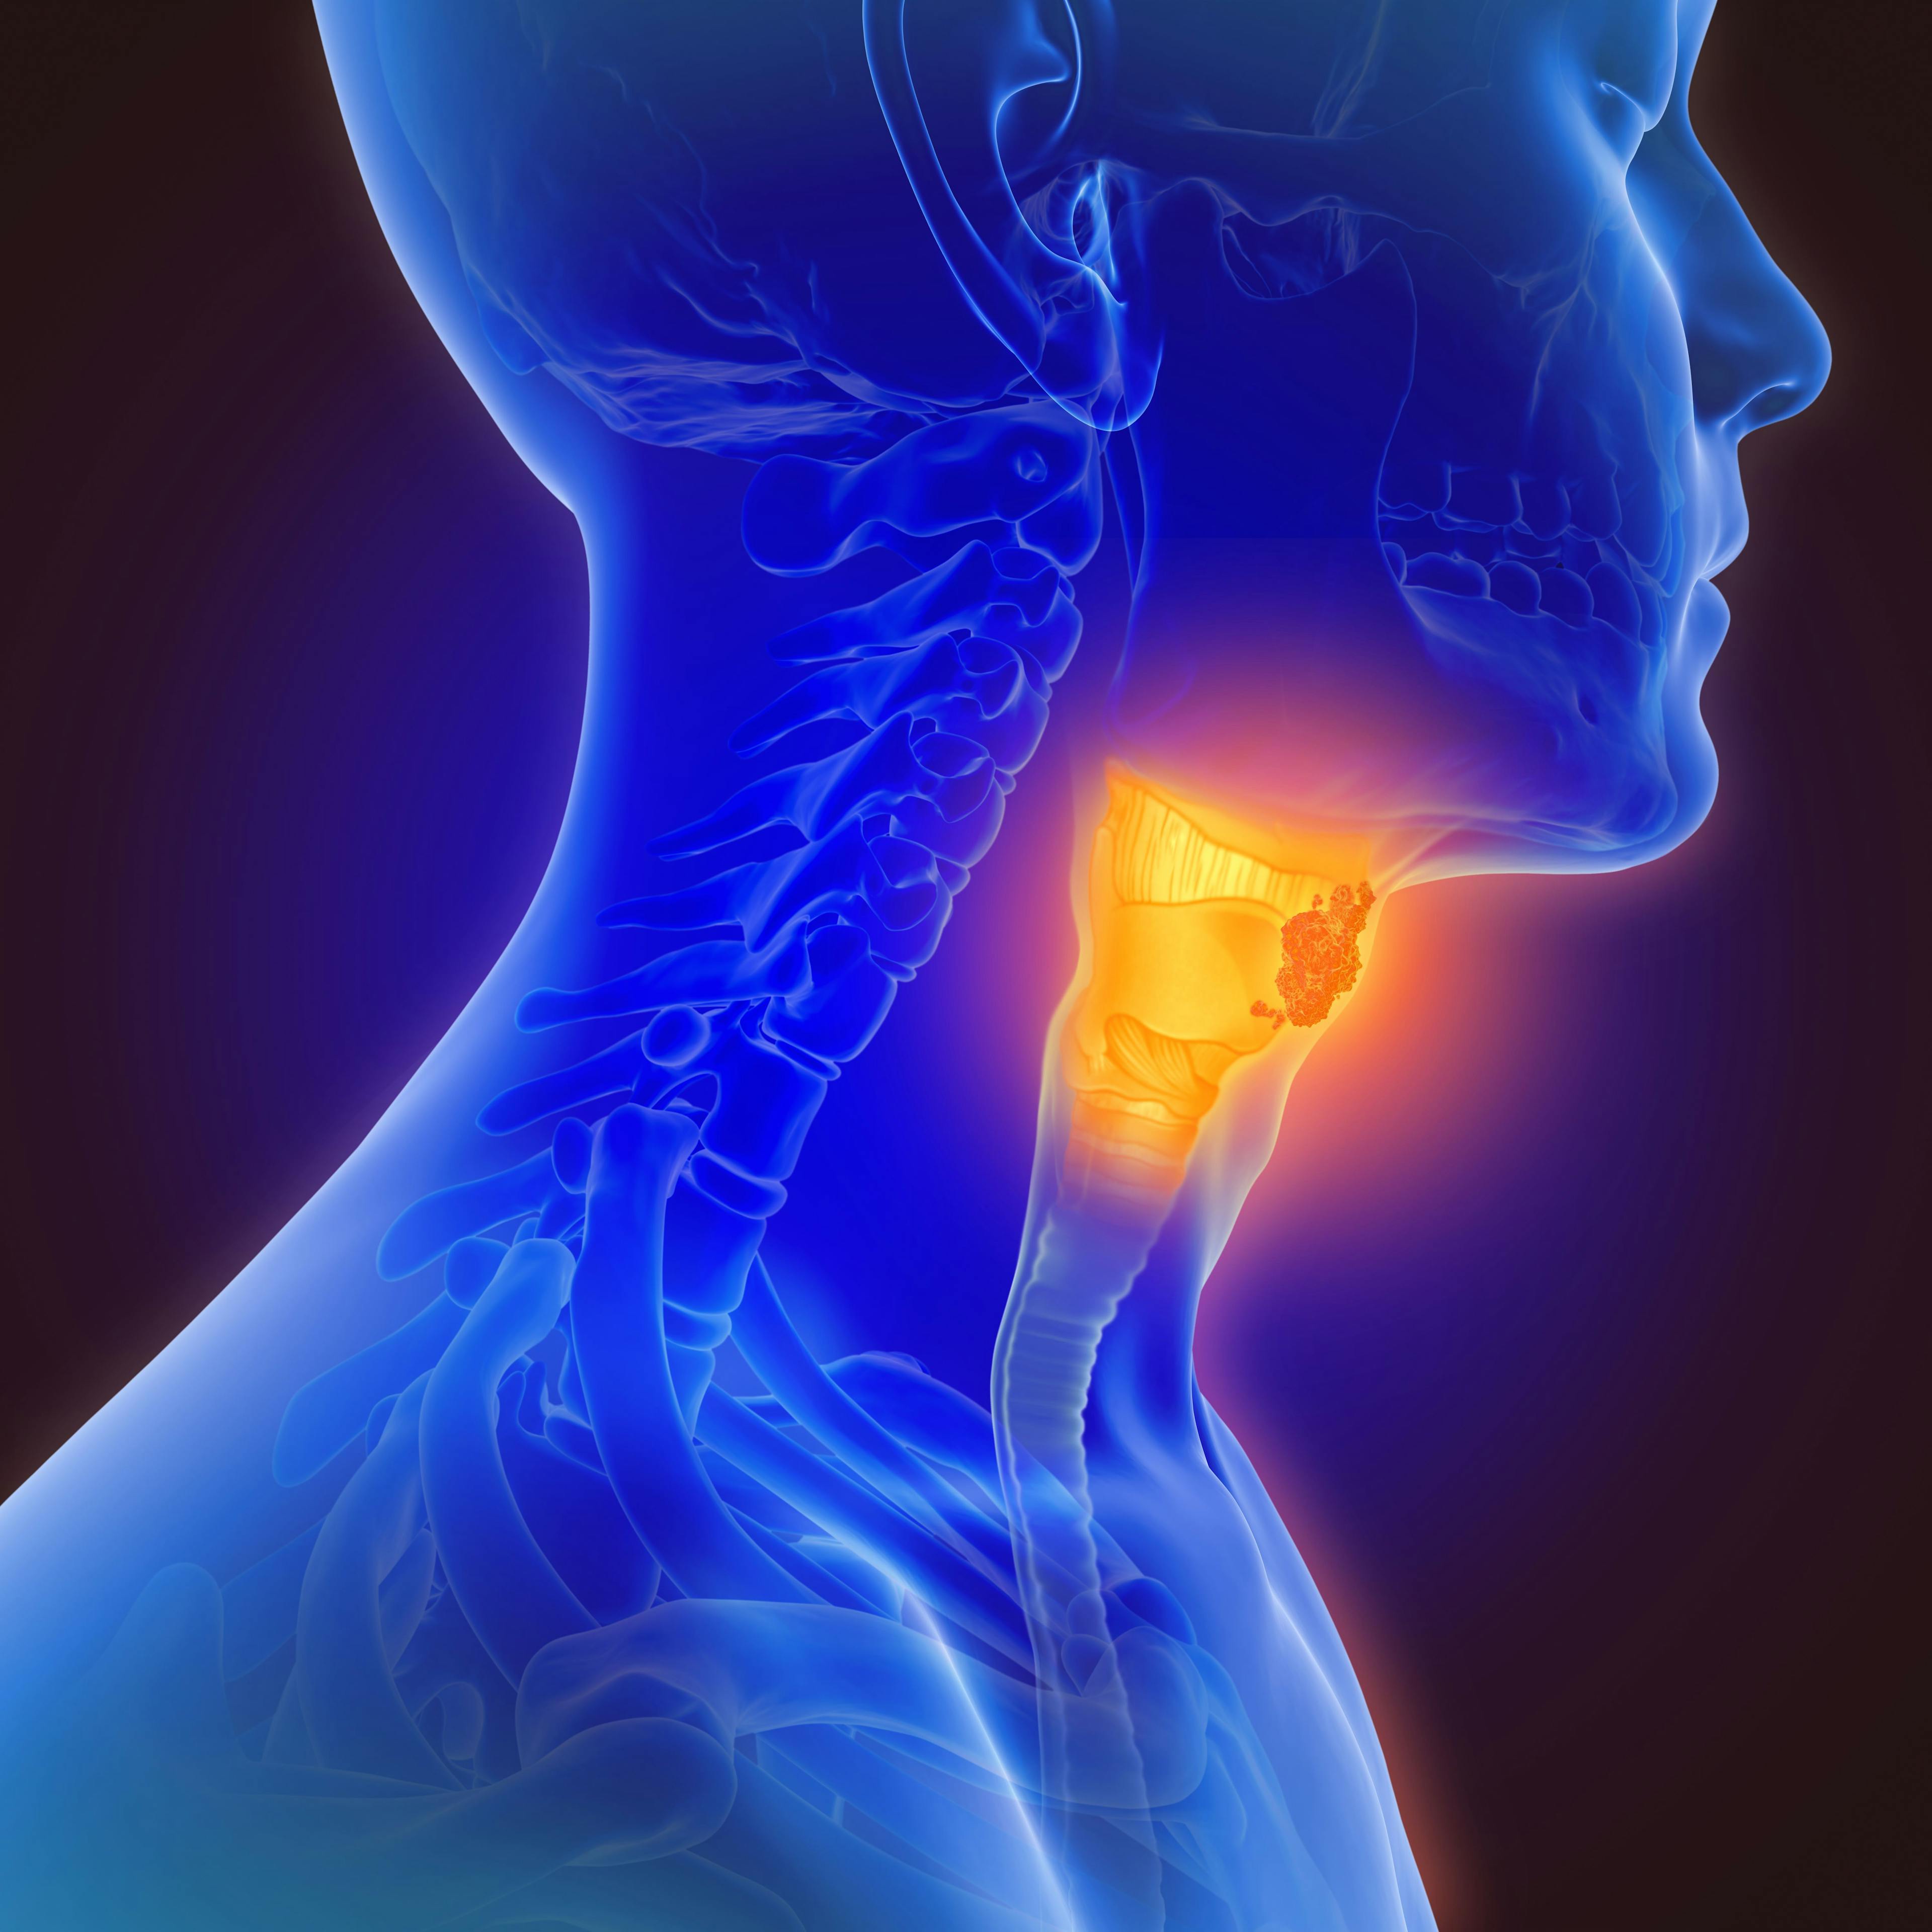 3d illustration of throat cancer: © Lars Neumann - stock.adobe.com